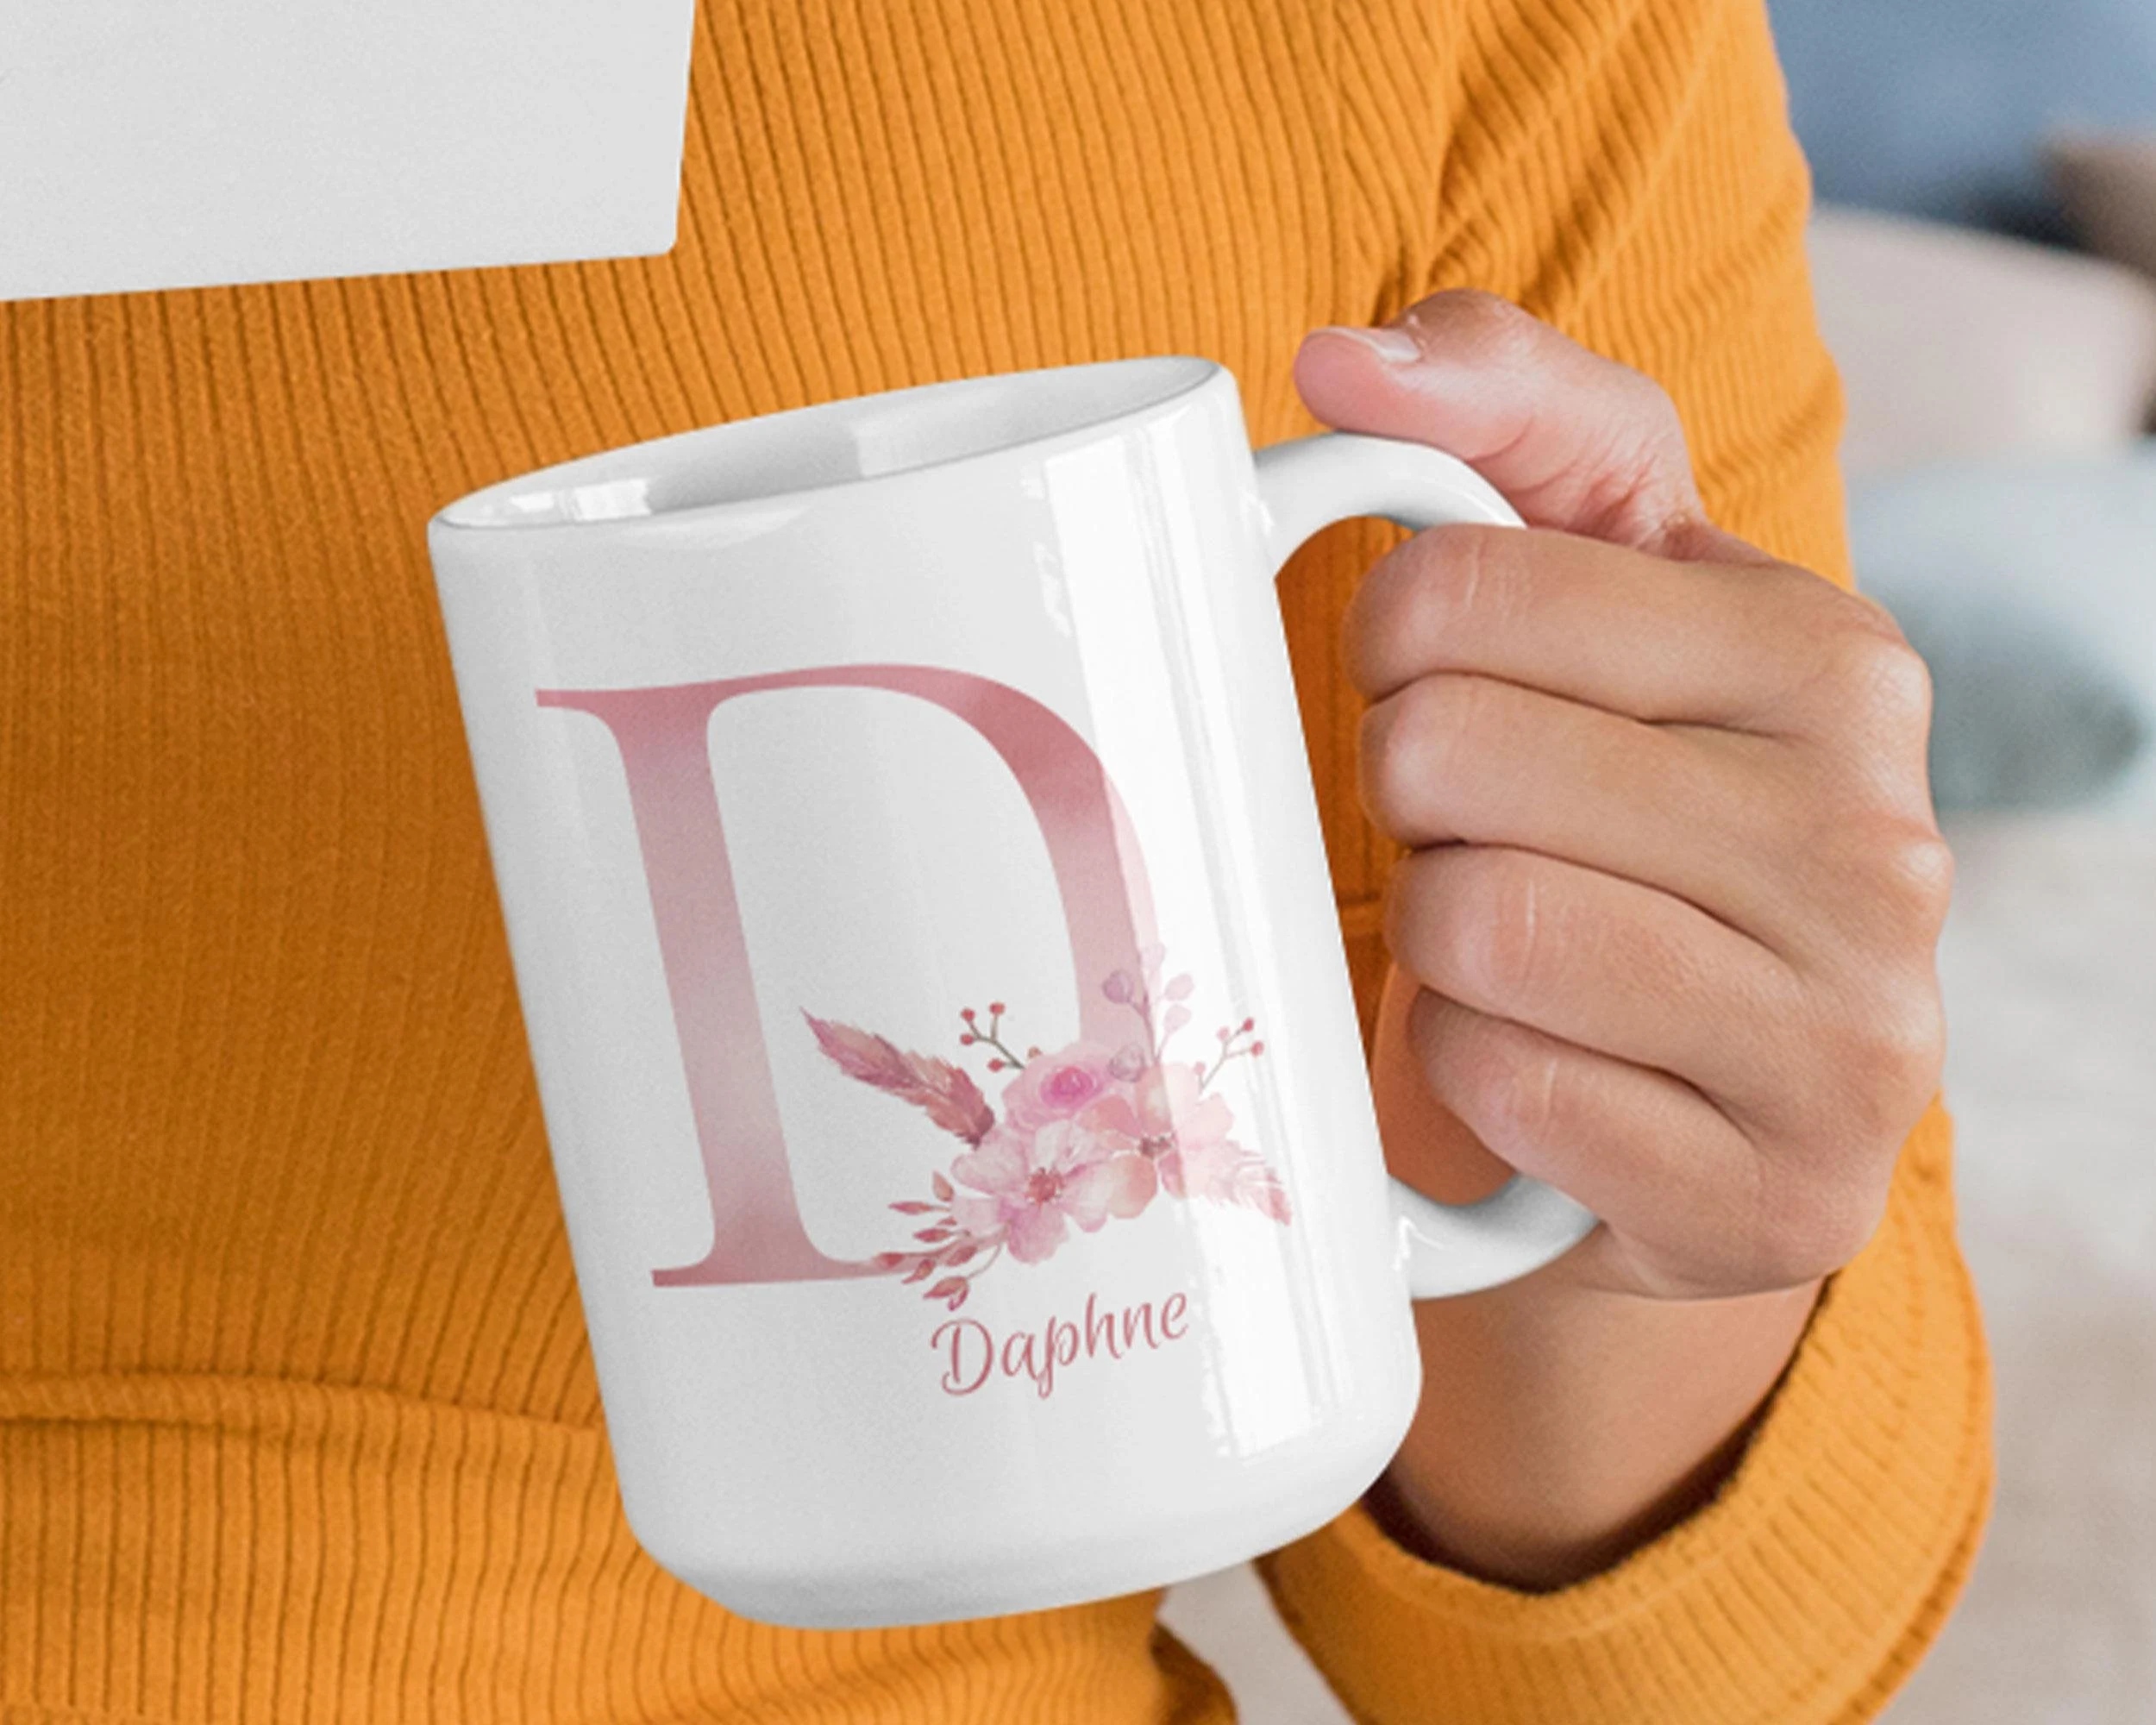 D Name Ka - Daphne - Name Mug